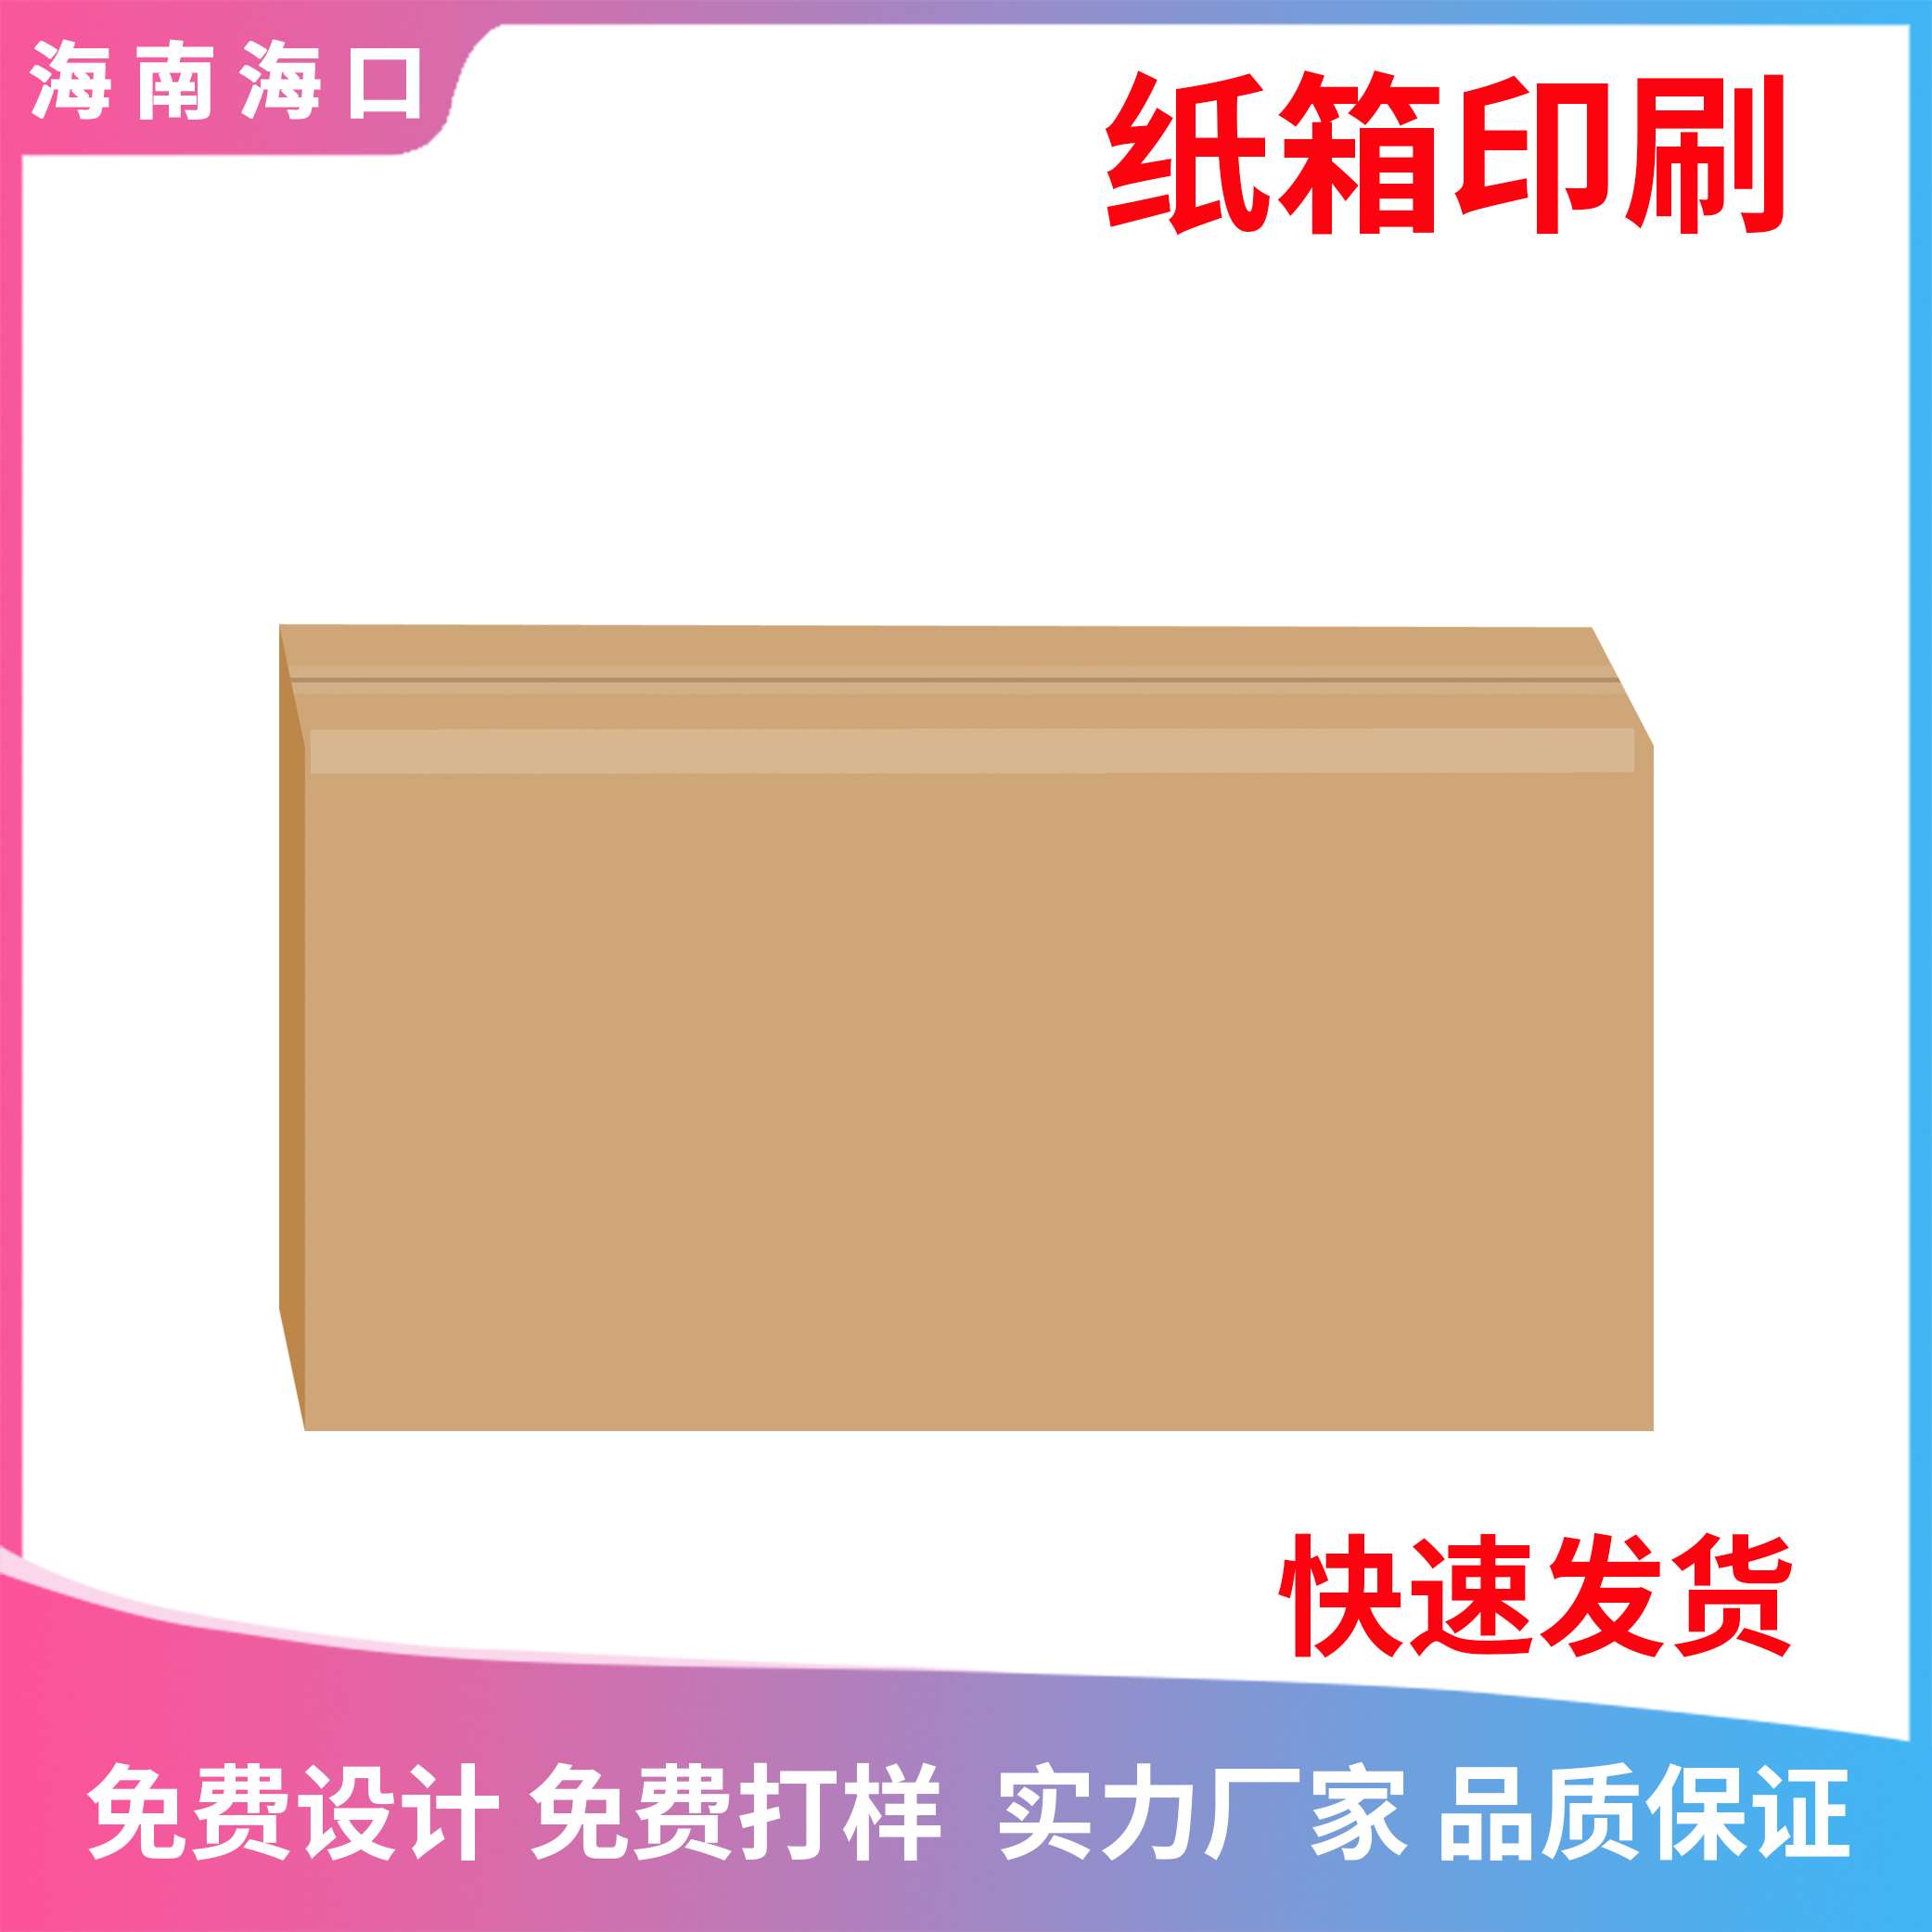 三亚纸箱厂 企业双色礼品盒 纸质单色包装盒加印logo设计